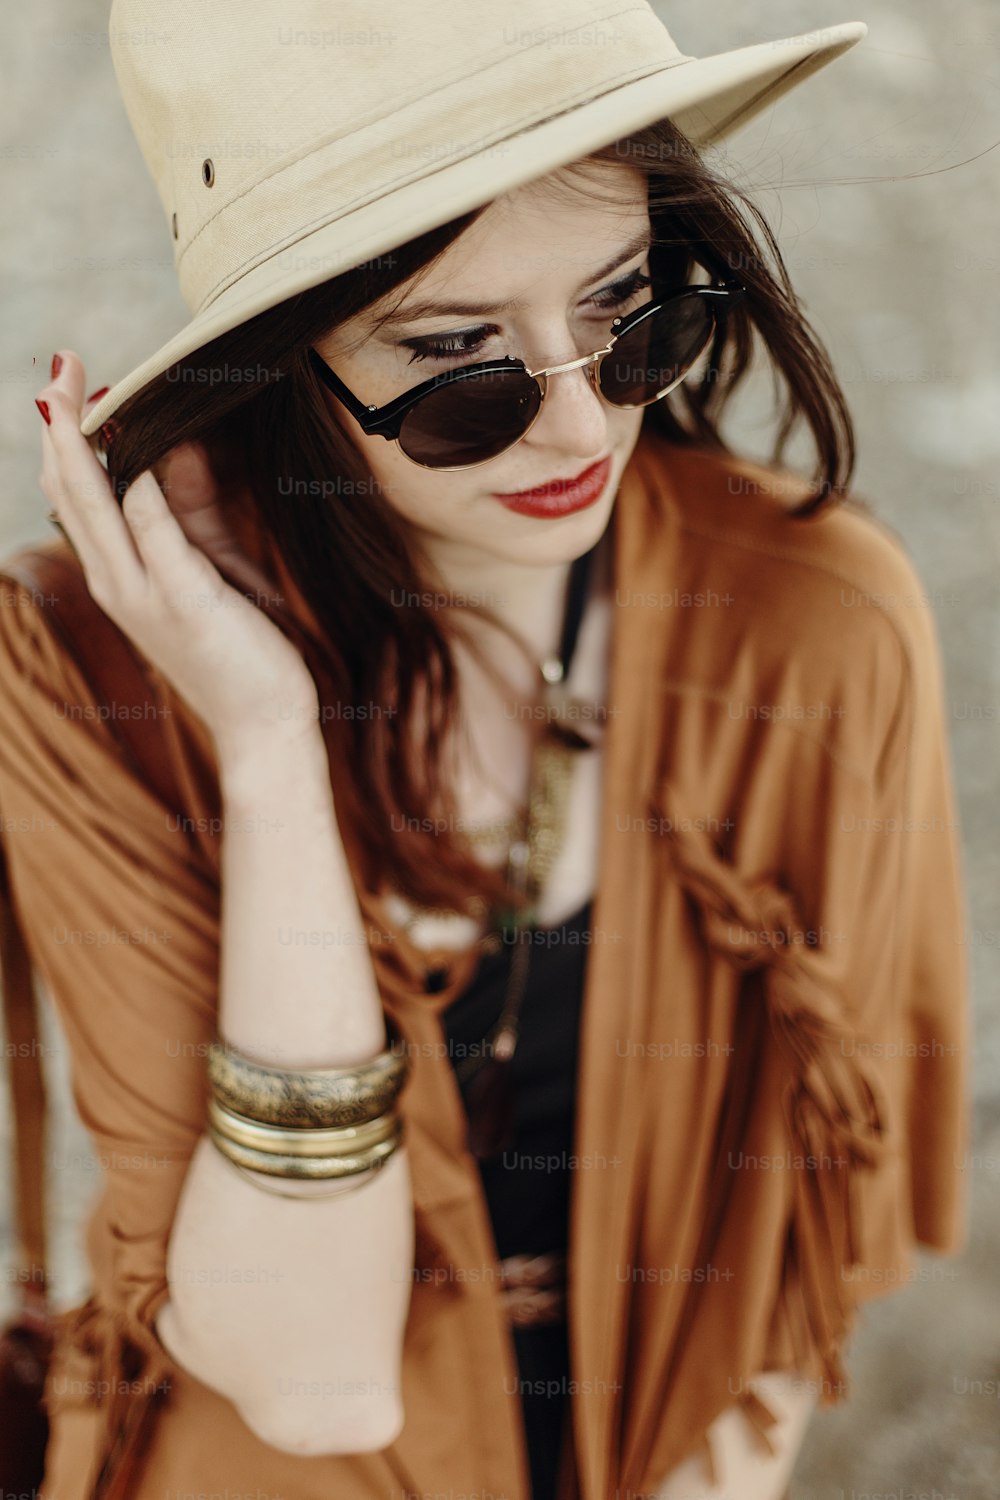 선글라스와 모자, 프린지 판초와 가죽 가방을 입은 아름다운 세련된 보헤미안 여자. 집시의 힙스터 소녀는 산의 강 해변 근처에서 포즈를 취하는 젊은 여행자를 봅니다. 관능적 인 표정.